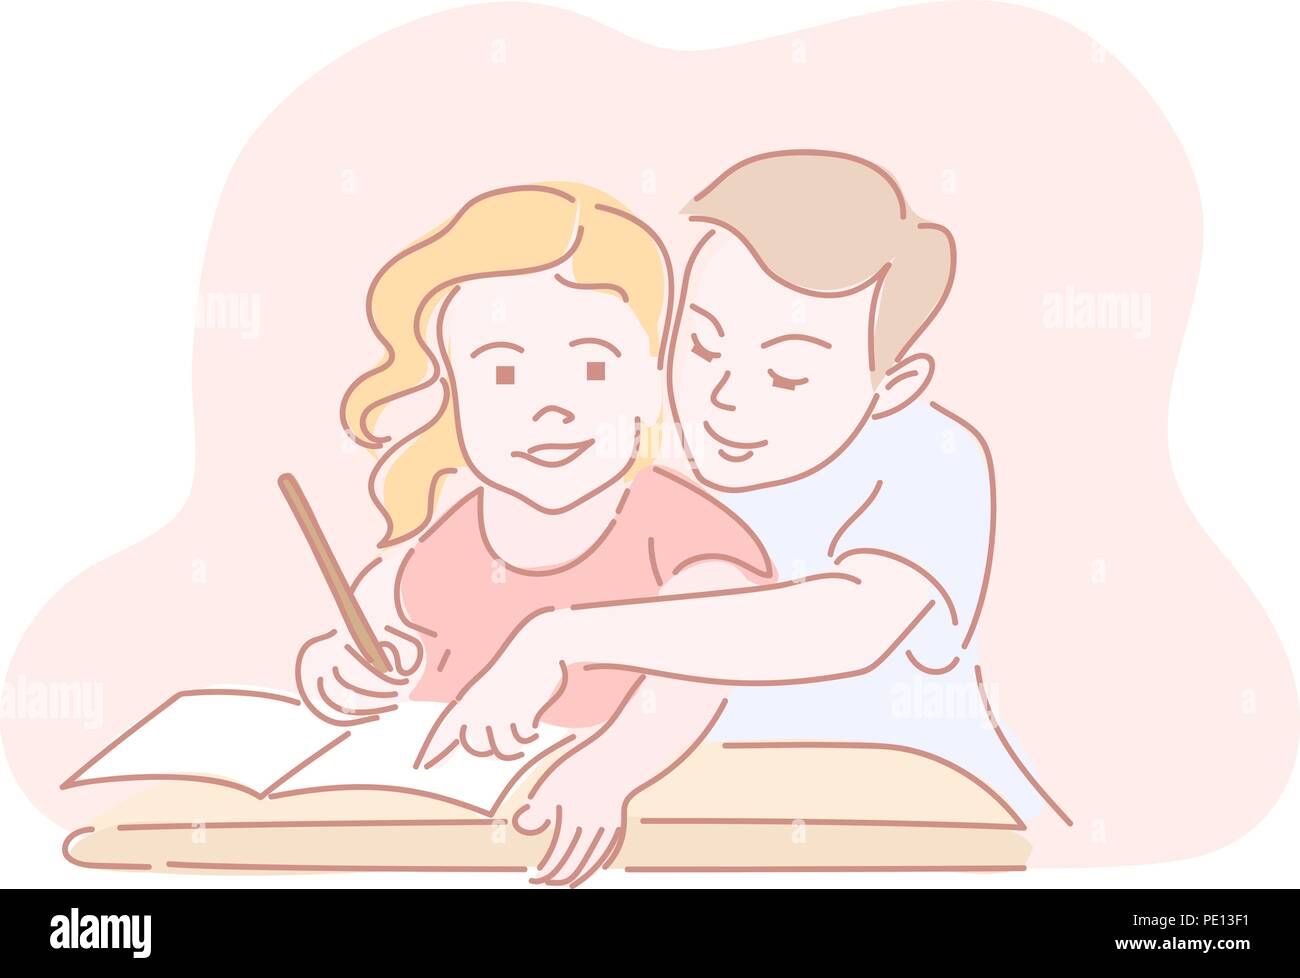 Zwei Kinder schreiben Hausaufgaben im Arbeitsblatt. Hand Stil doodle Design gezeichnet. Vector Illustration Stock Vektor